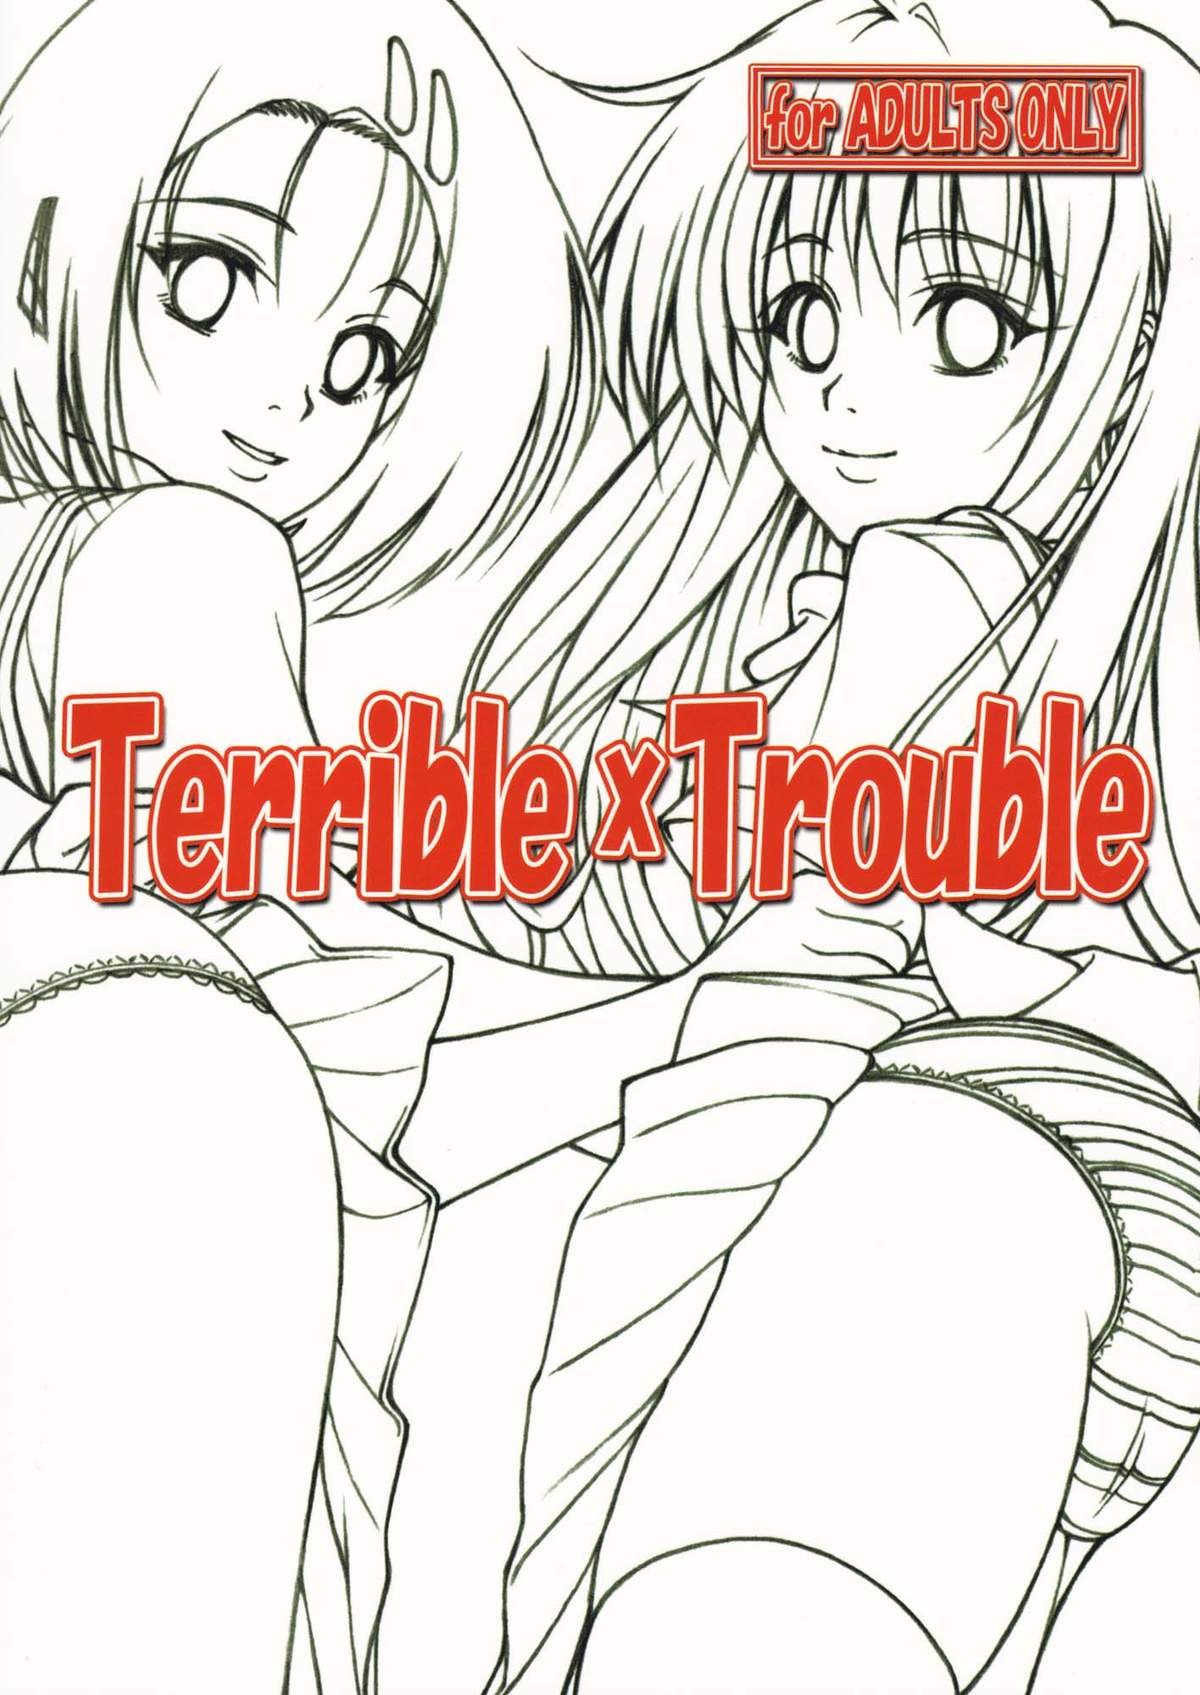 [ゴリラギャング団 (越智愛)] Terrible x Trouble (ToLOVEる) [2009年10月19日]